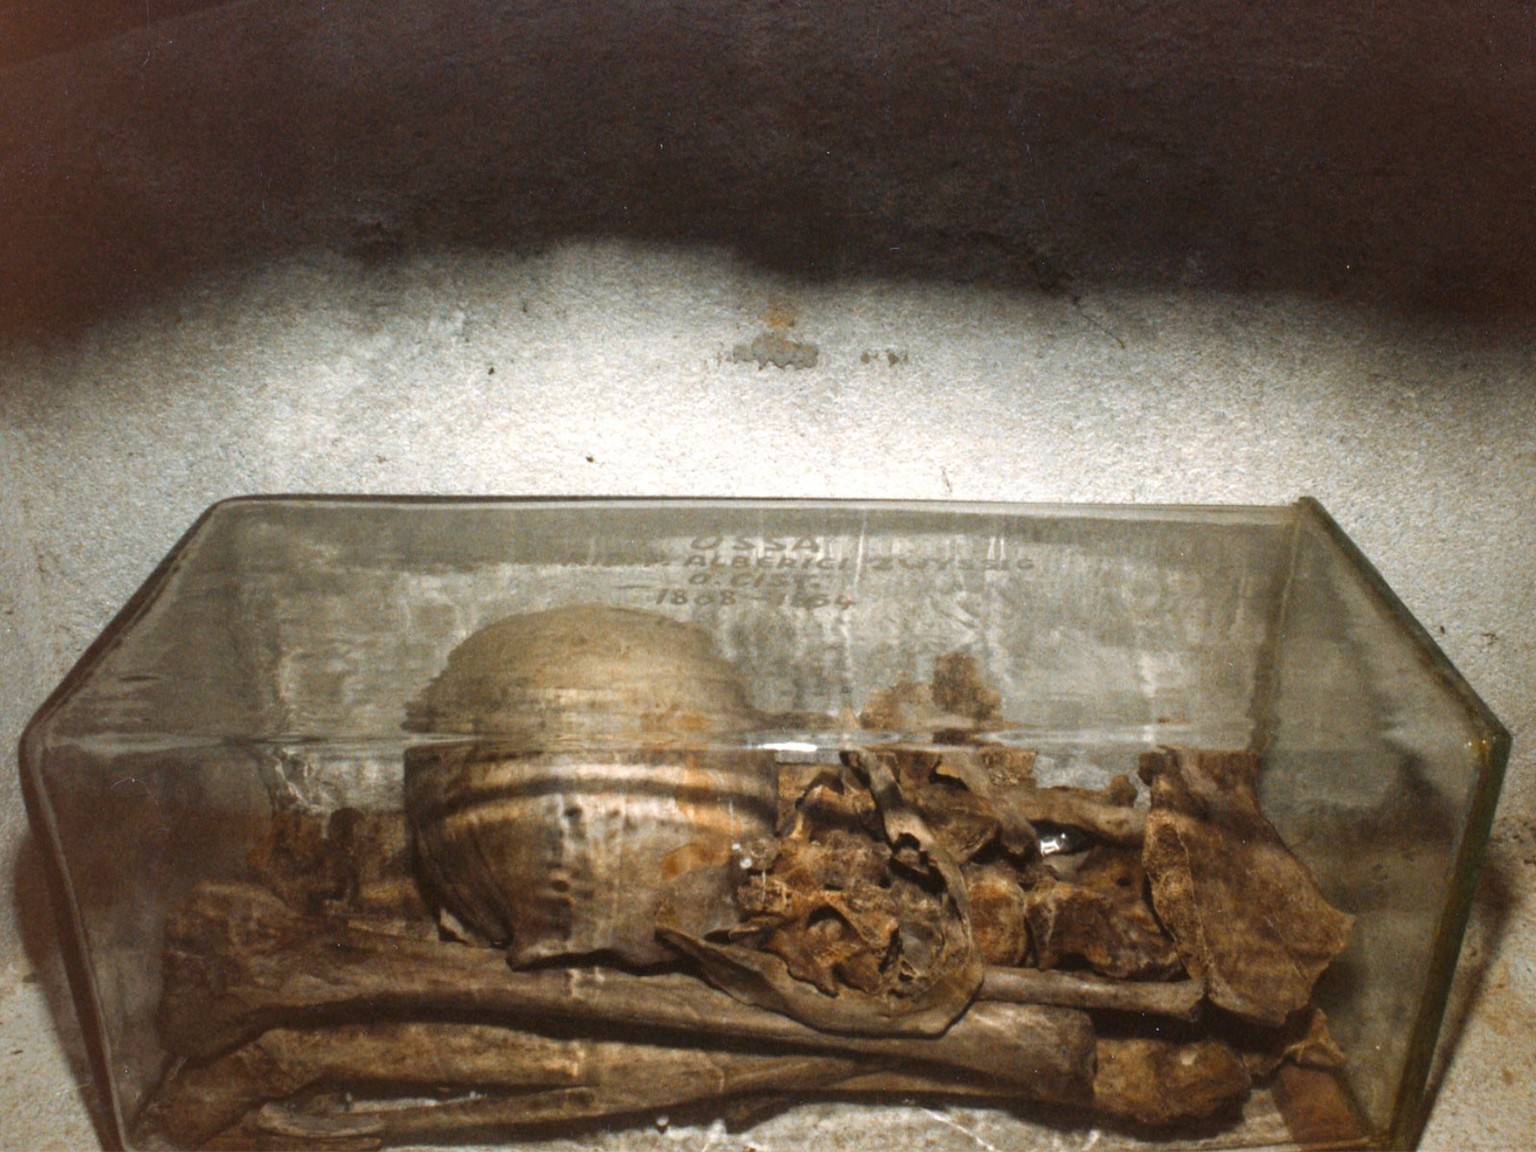 Un bien lugubre souvenir: sarcophage de verre renfermant les ossements d’Alberik Zwyssig.
https://scope.ur.ch/scopeQuery/detail.aspx?ID=50933